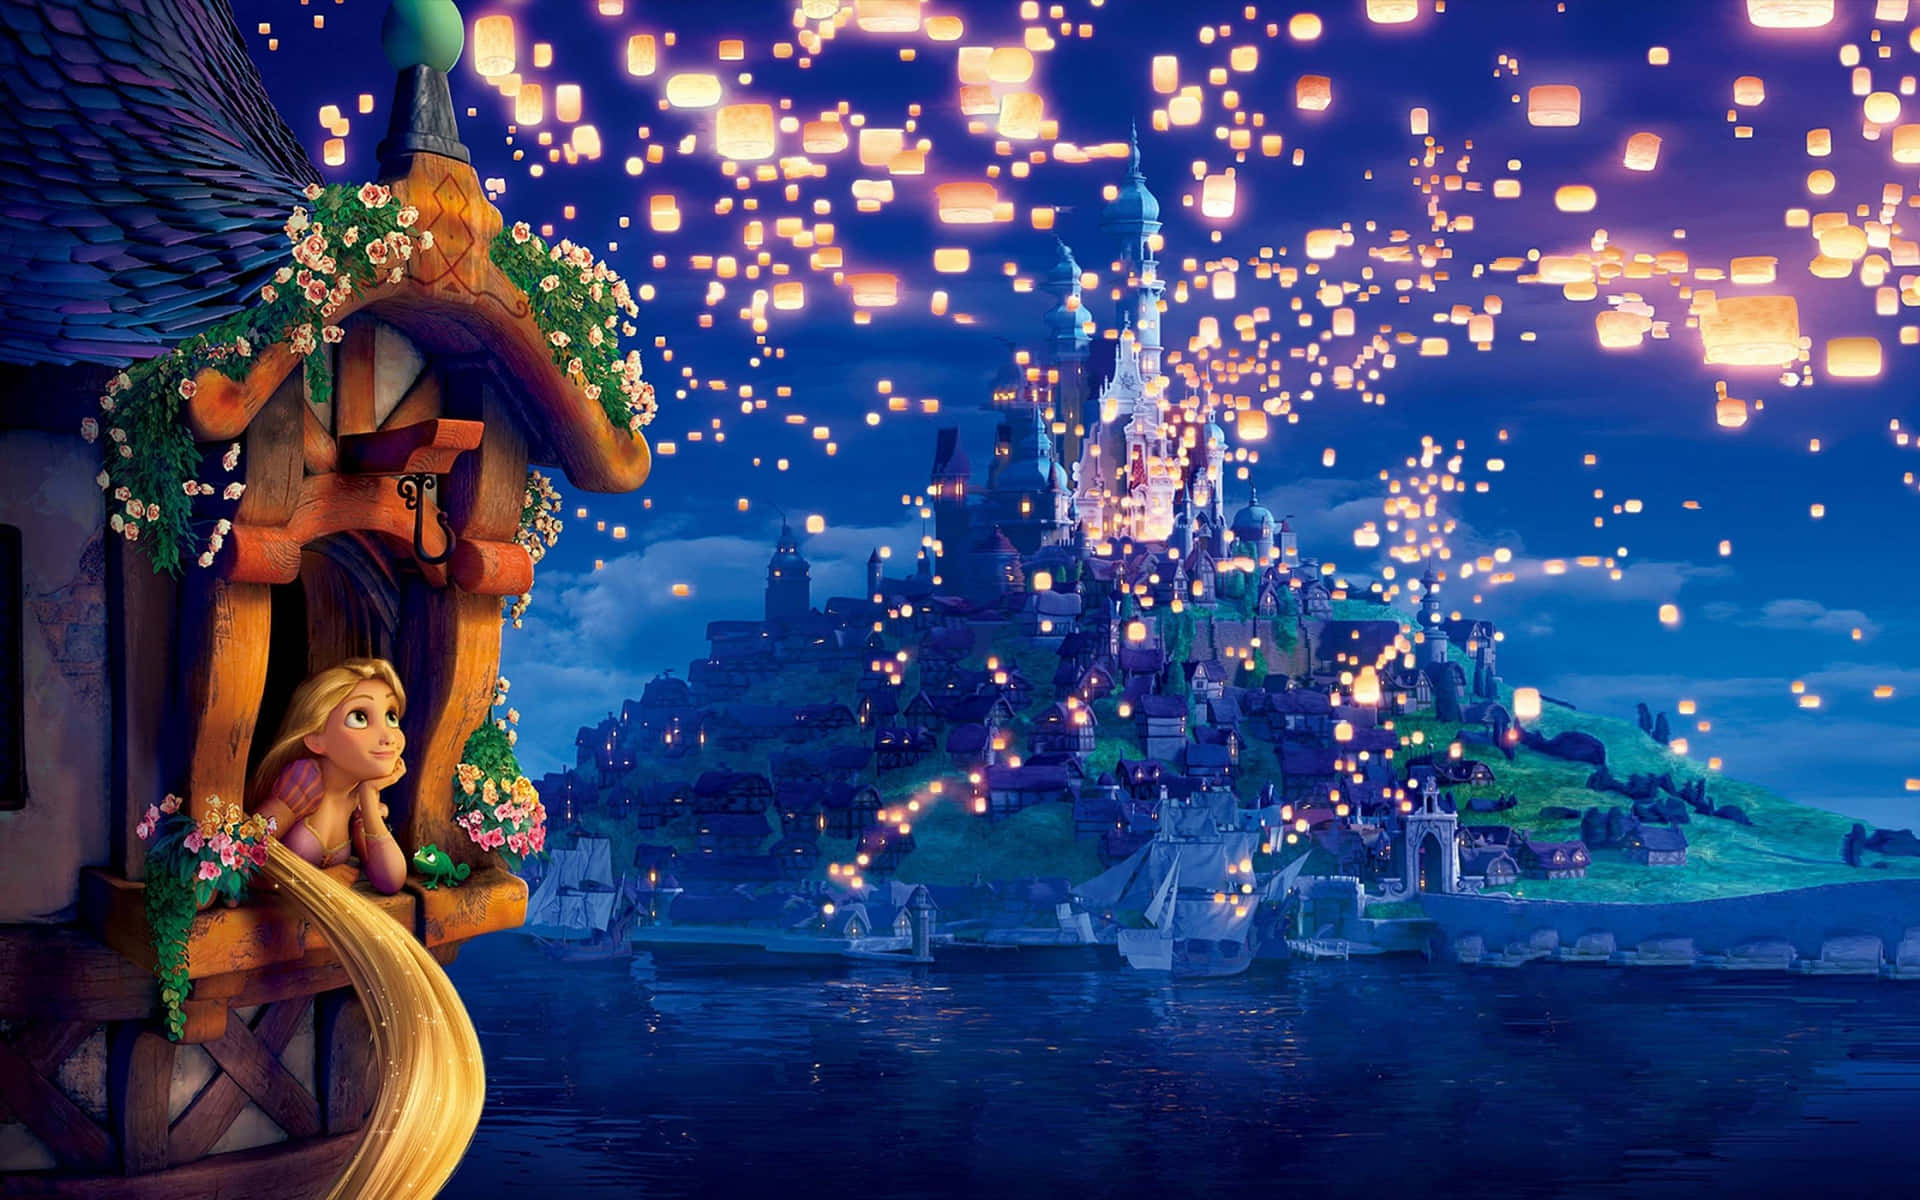 Bedste Disney baggrund Rapunzel ser på himlen